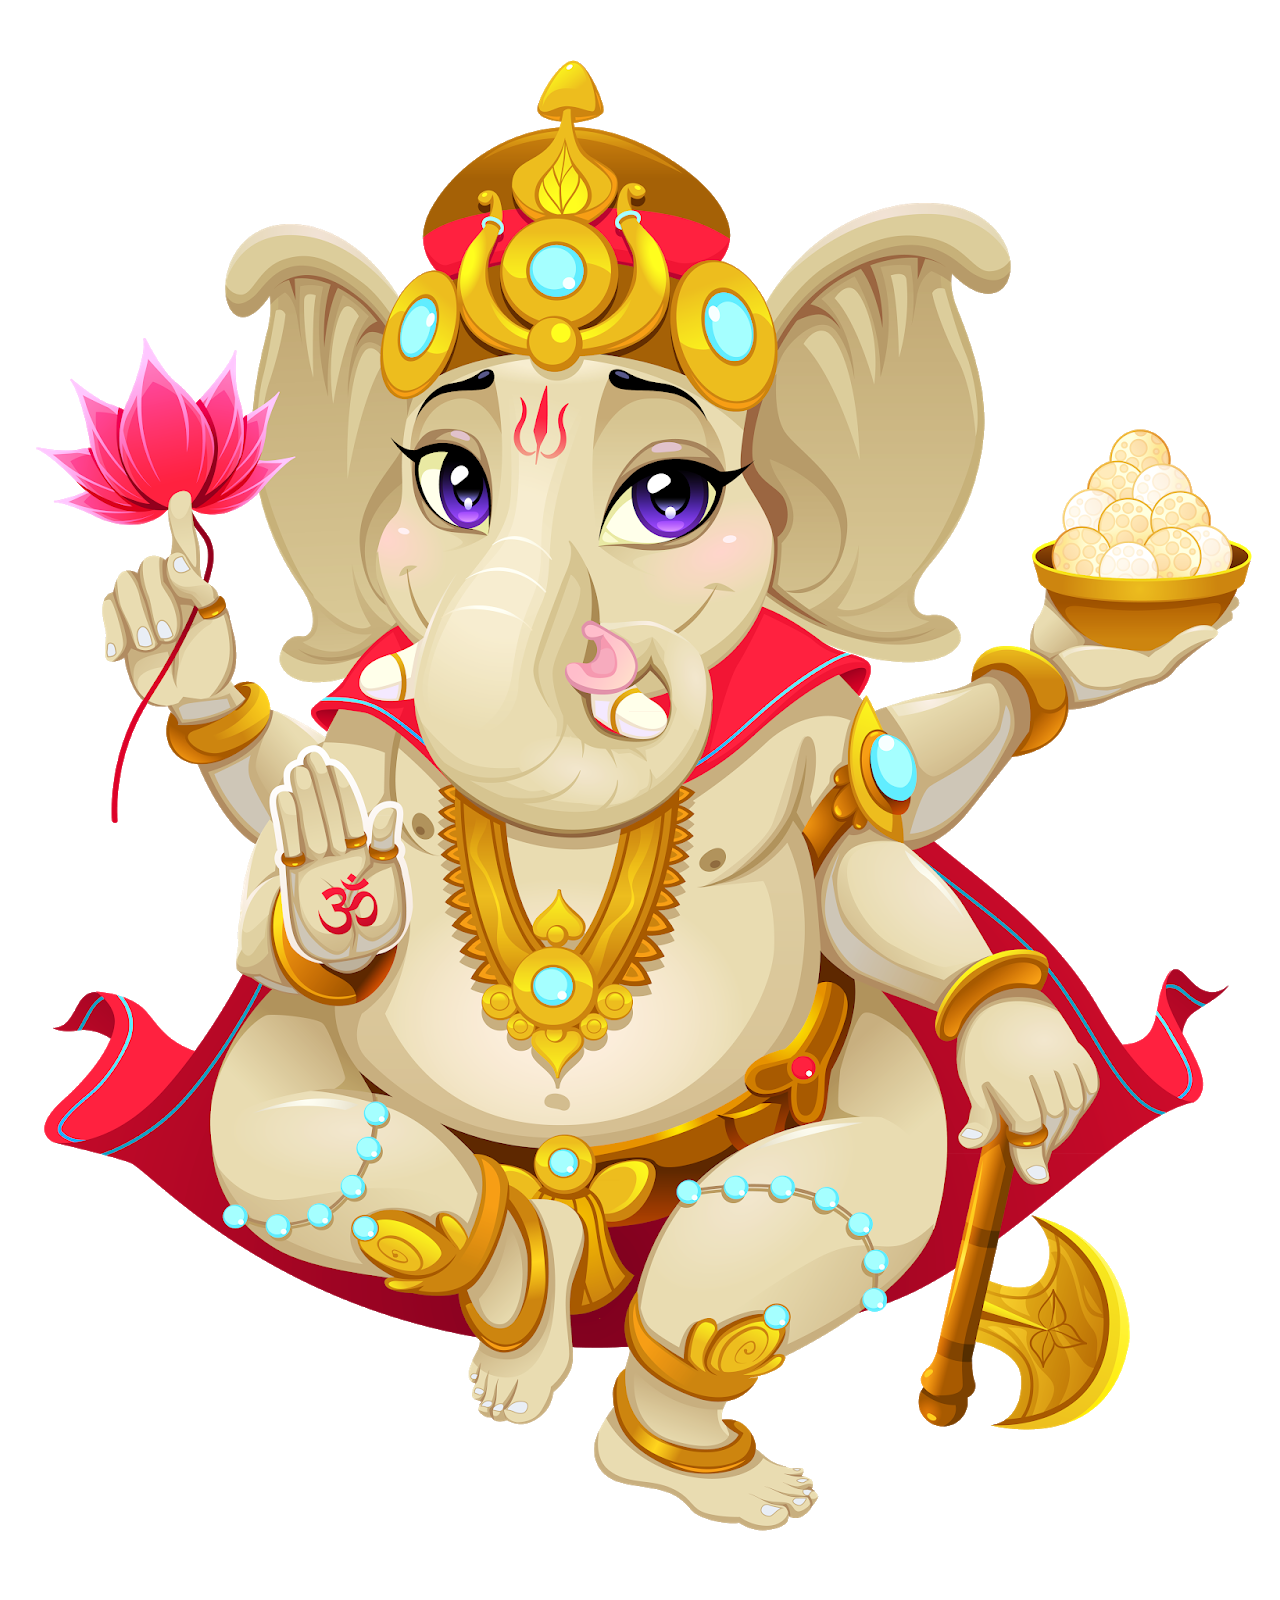 Ganesha PNG: Cùng khám phá bức ảnh Ganesha transparent PNG, một hình ảnh mang tính sáng tạo và chuyên nghiệp. Với độ nét cao và sự trong suốt đặc biệt, bức ảnh này sẽ giúp bạn trang trí và sáng tạo nhiều tác phẩm đầy màu sắc và phong cách.